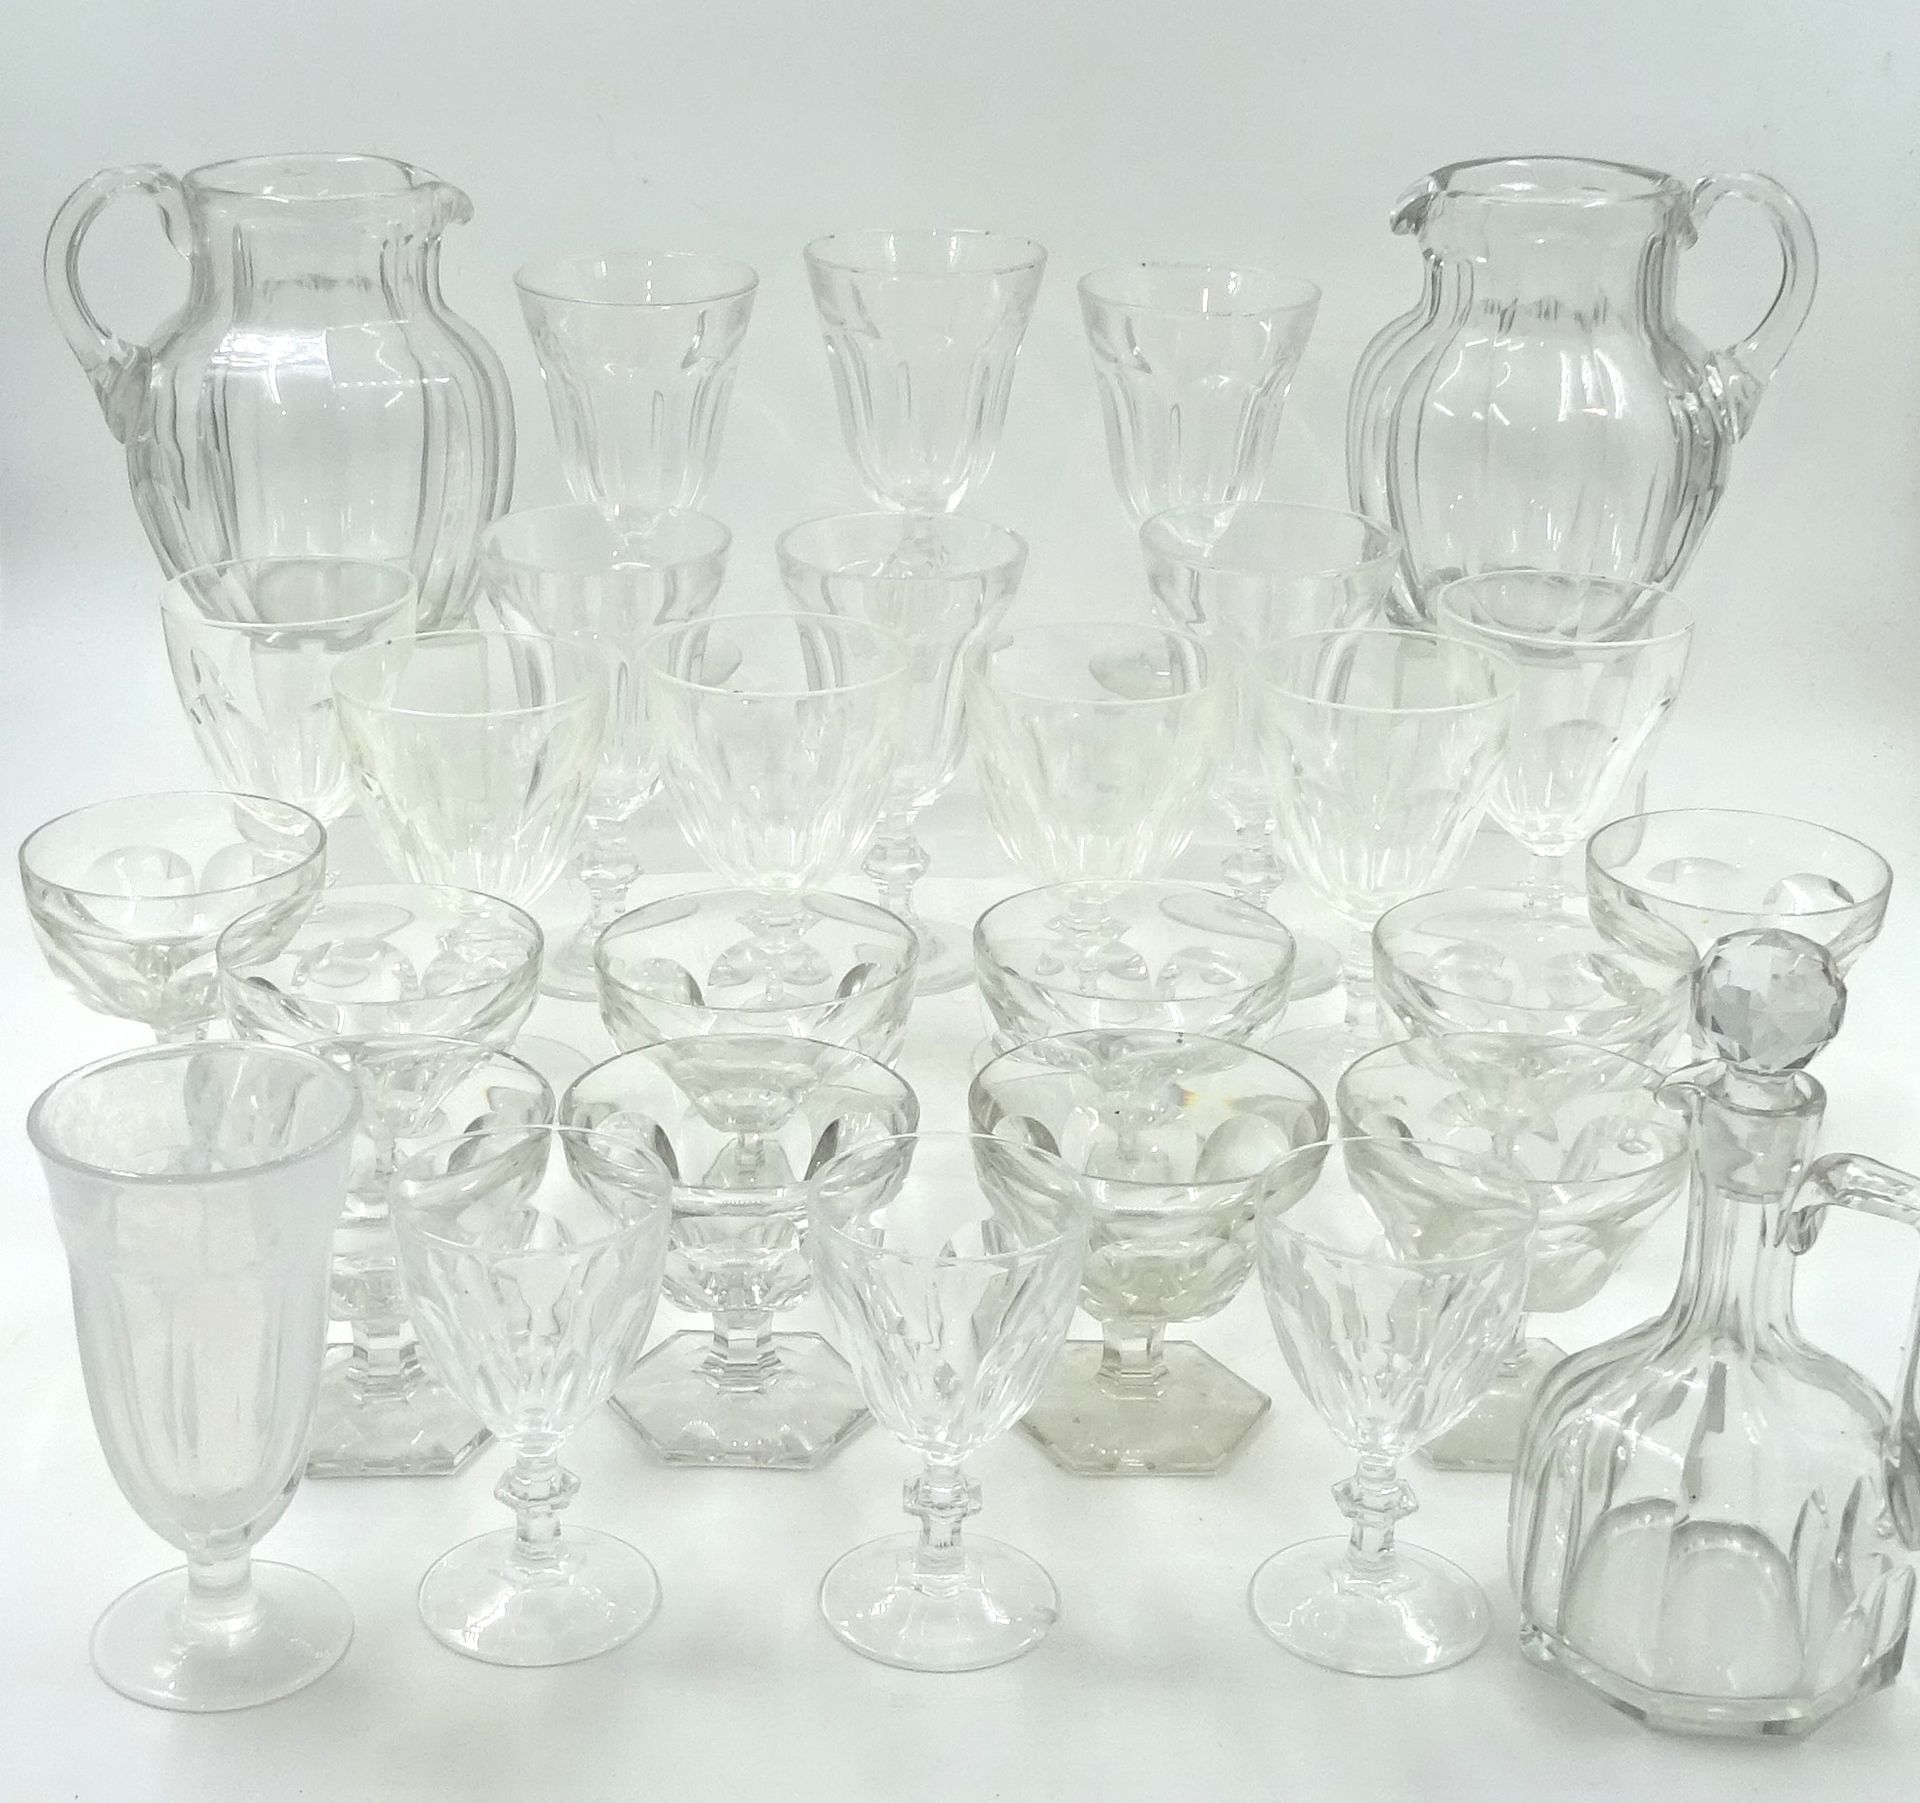 Null 一套不同尺寸的玻璃杯，采用巴卡拉 Harcourt 玻璃杯的风格。两个水壶（高 18 厘米）和一个玻璃瓶（高 18 厘米）。有些缺口和磨损。